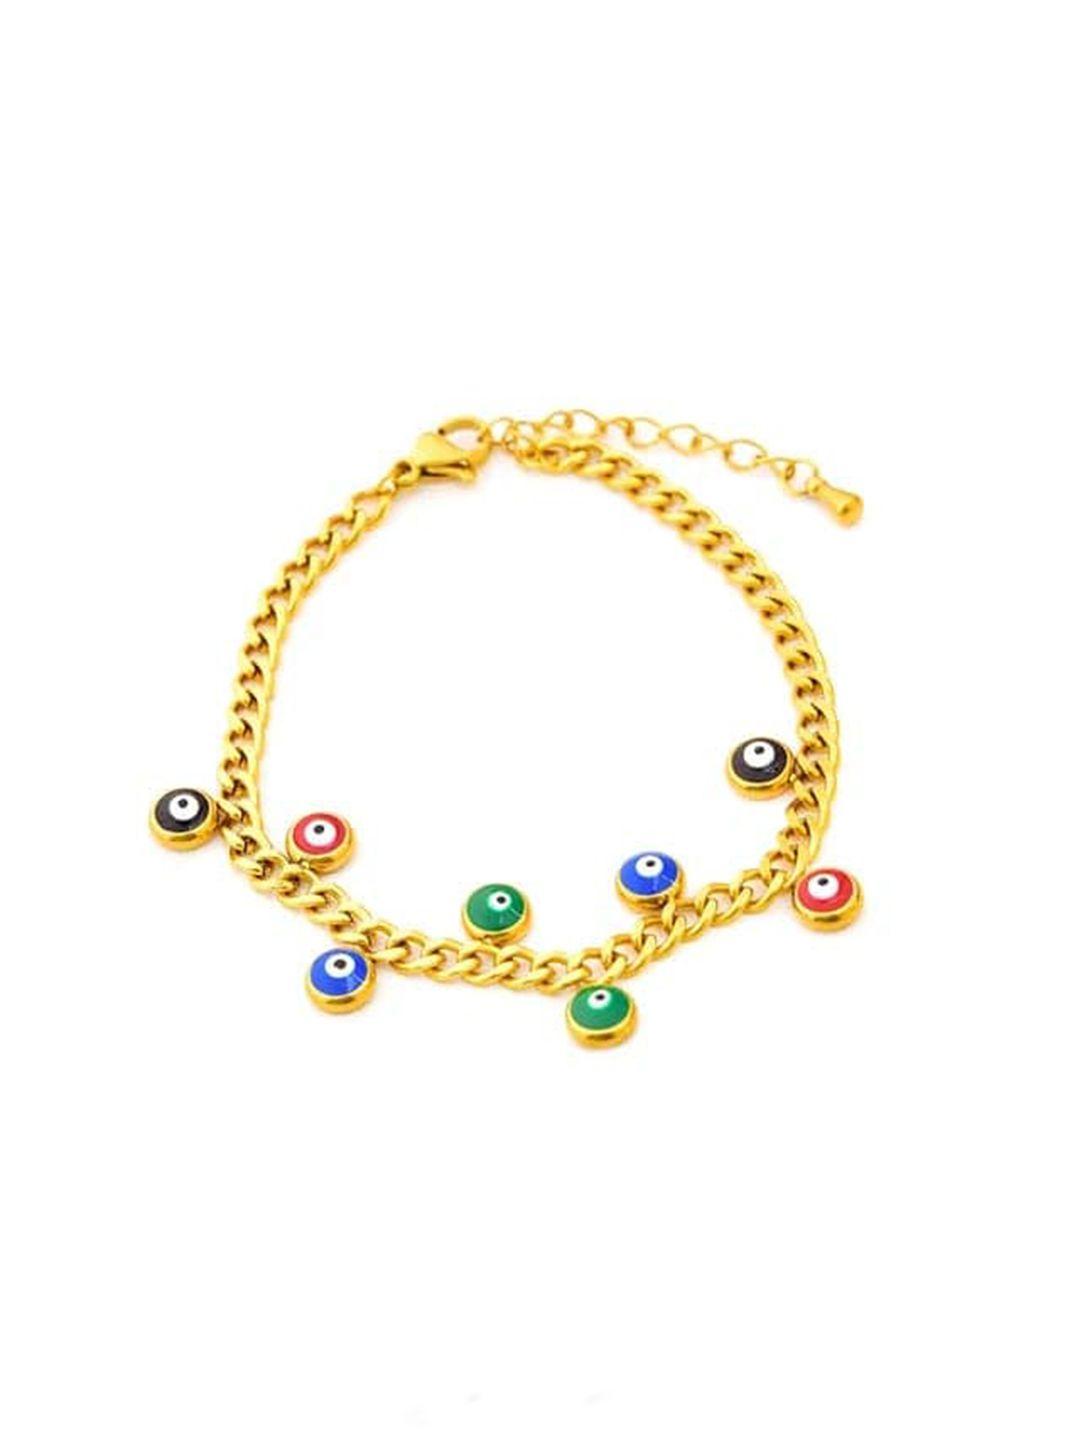 krystalz women gold-plated stainless steel charm bracelet